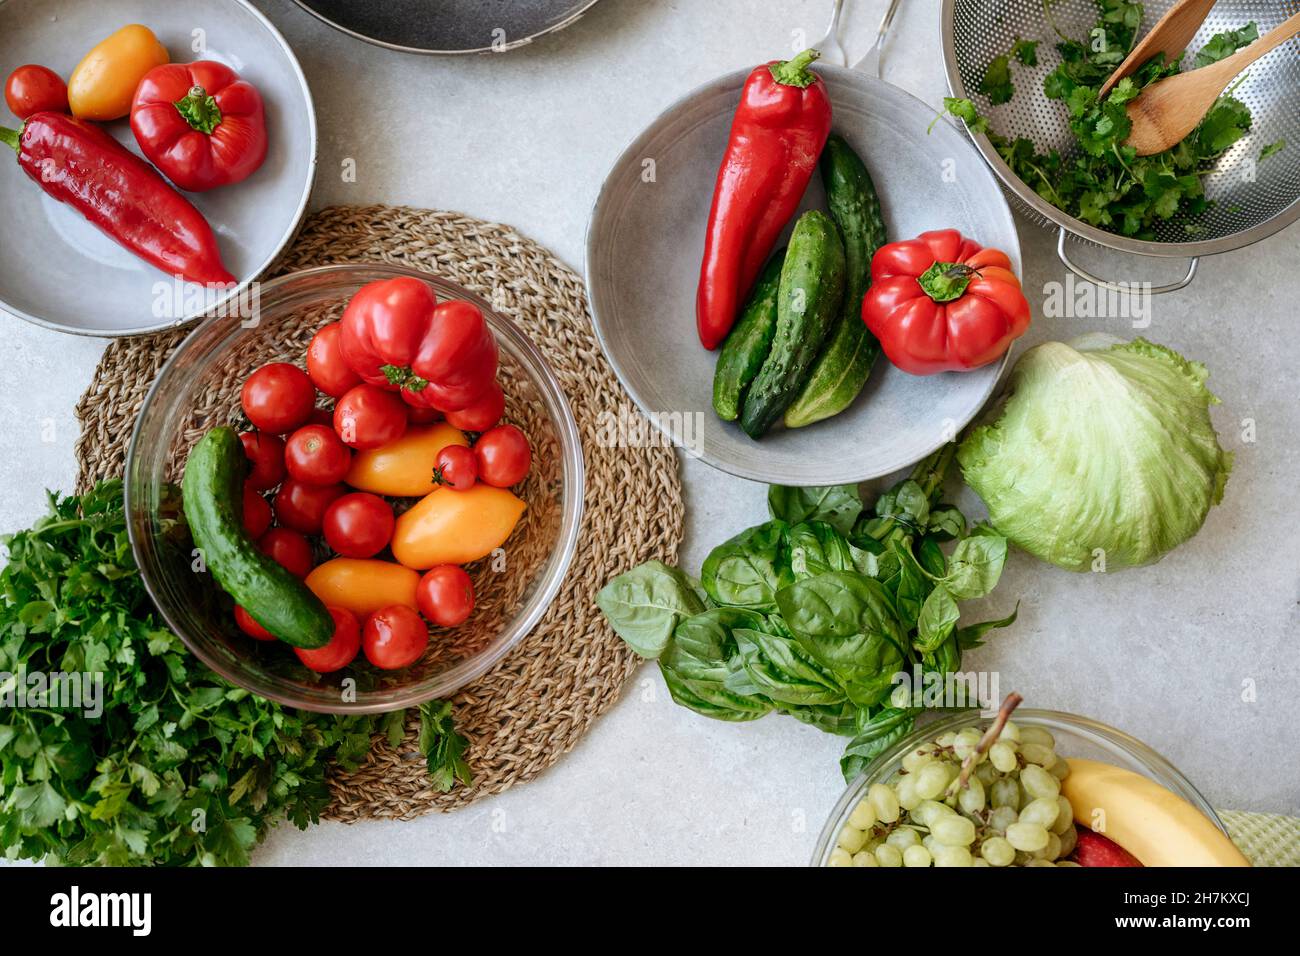 Fruits et légumes sur l'île de cuisine Banque D'Images